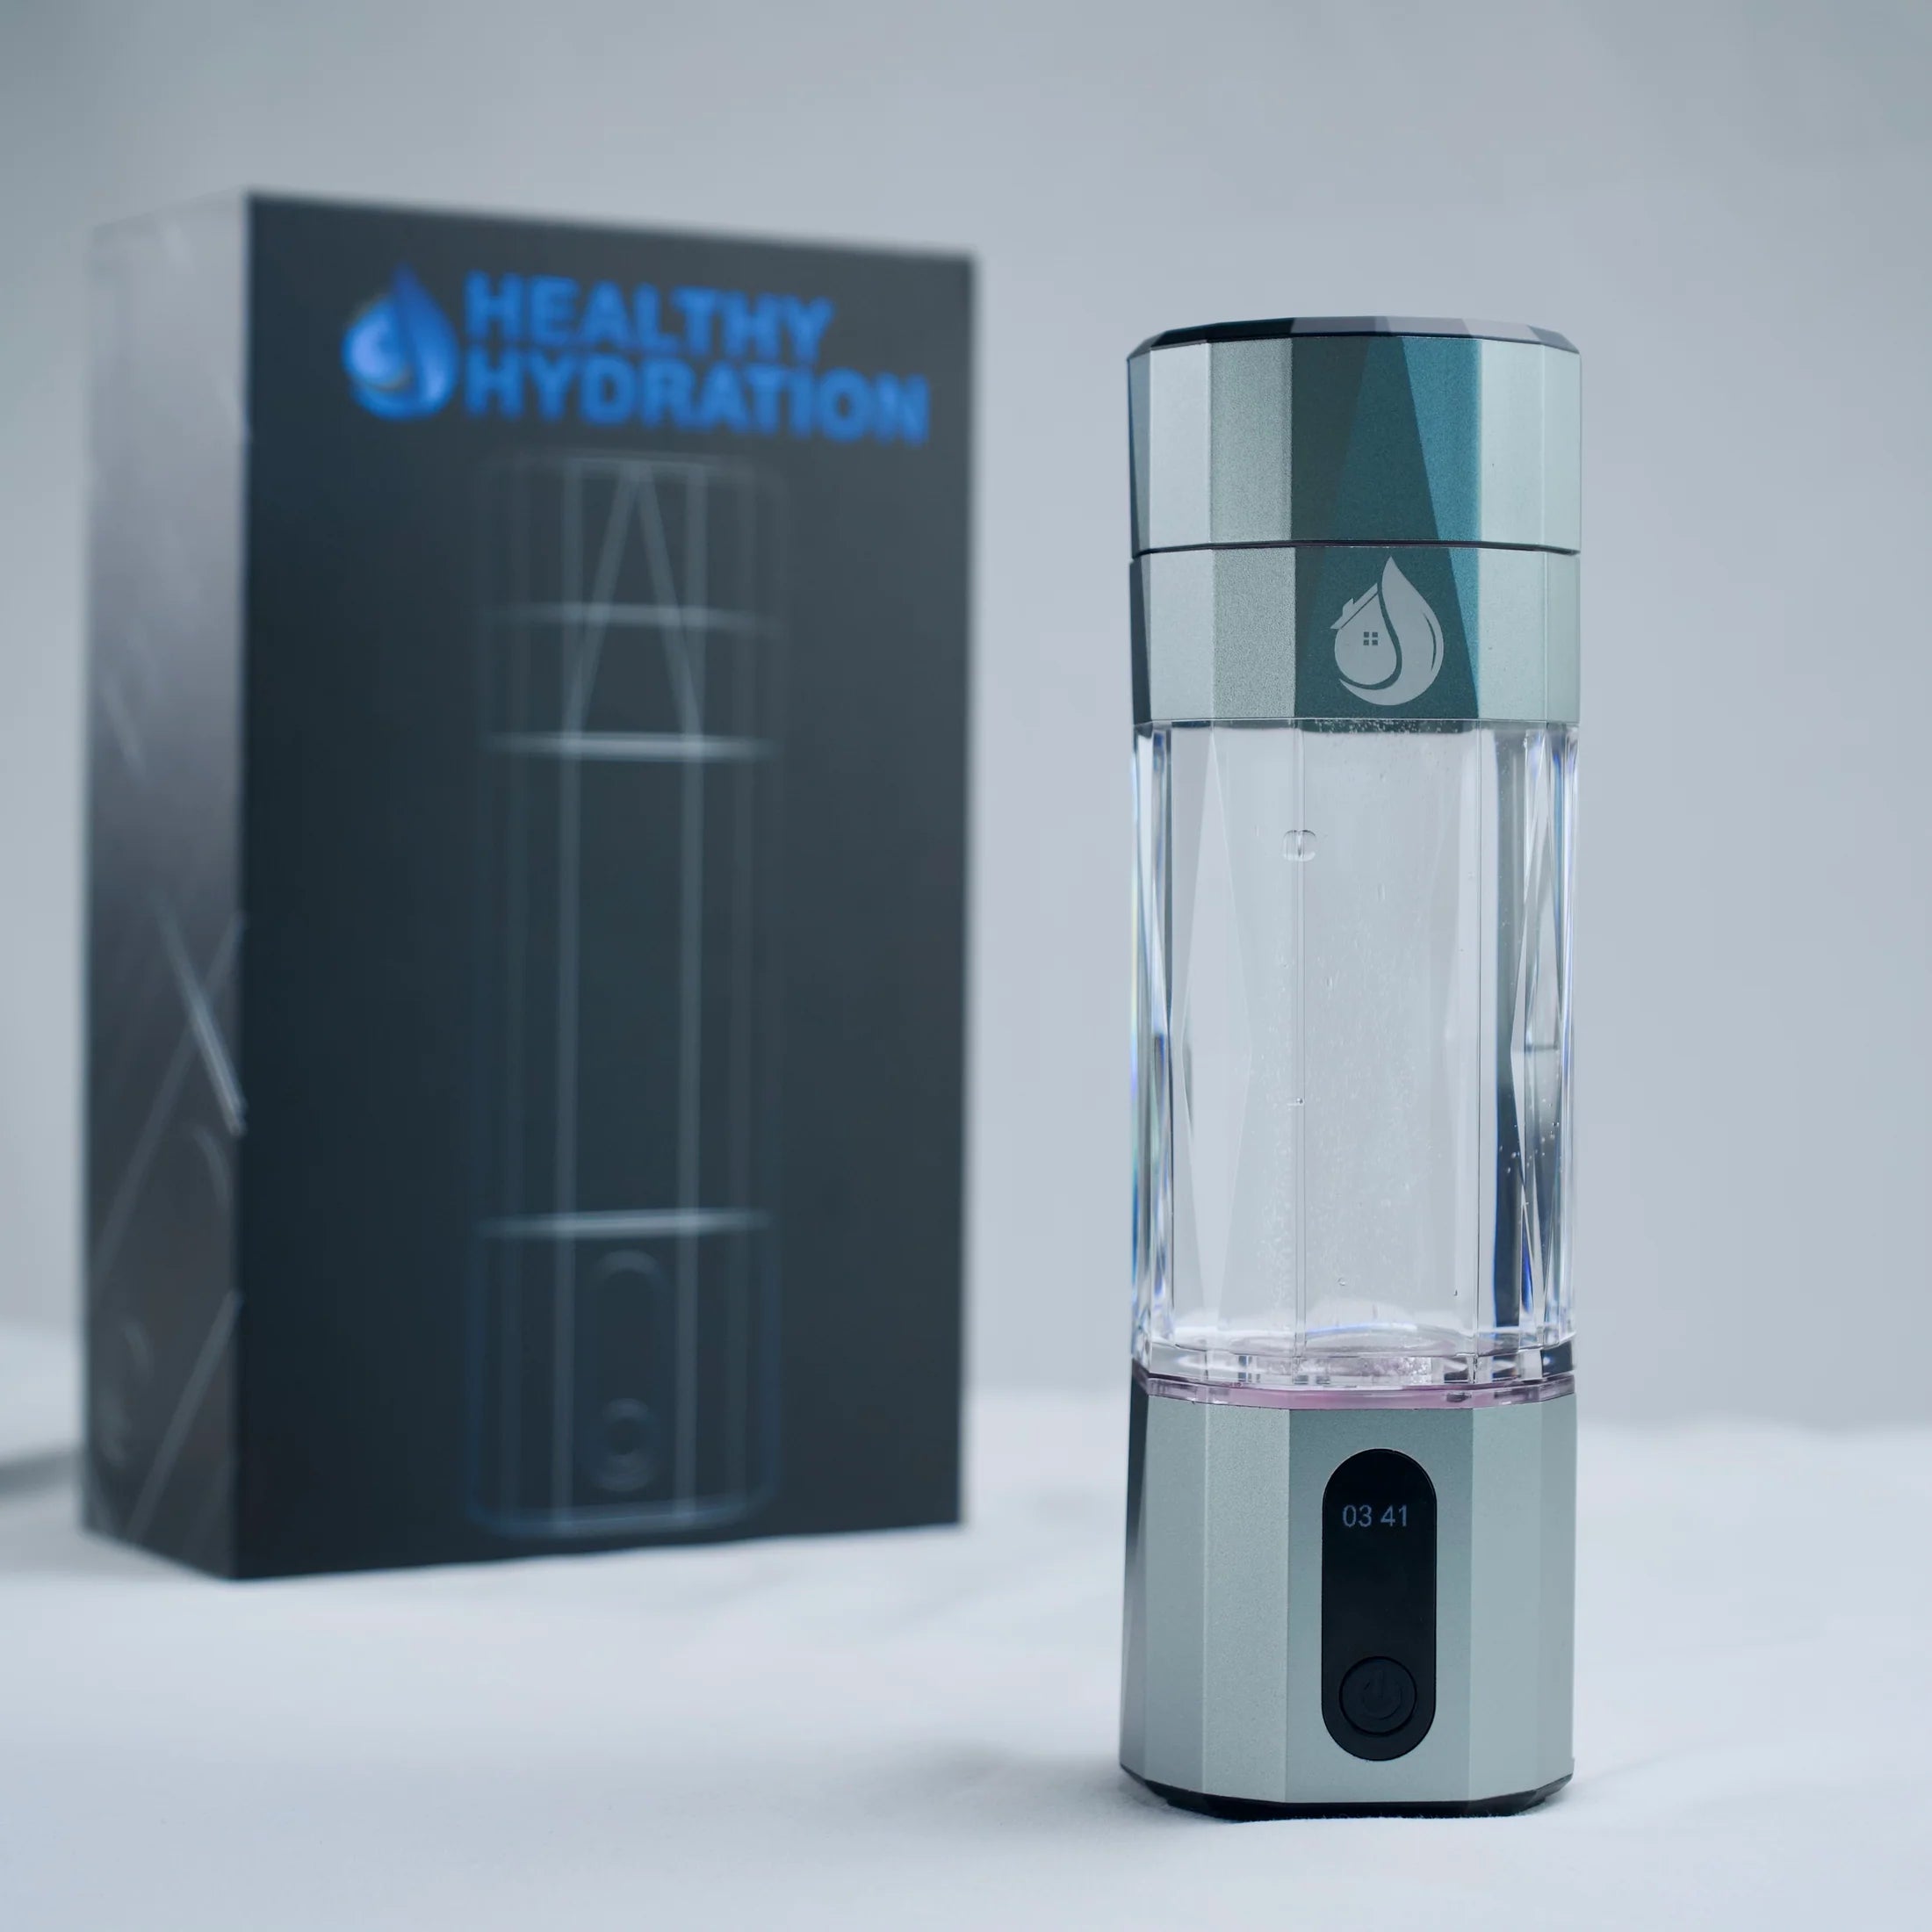 Hydra-Shot Hydrogen Bottle – Hydrogen FX